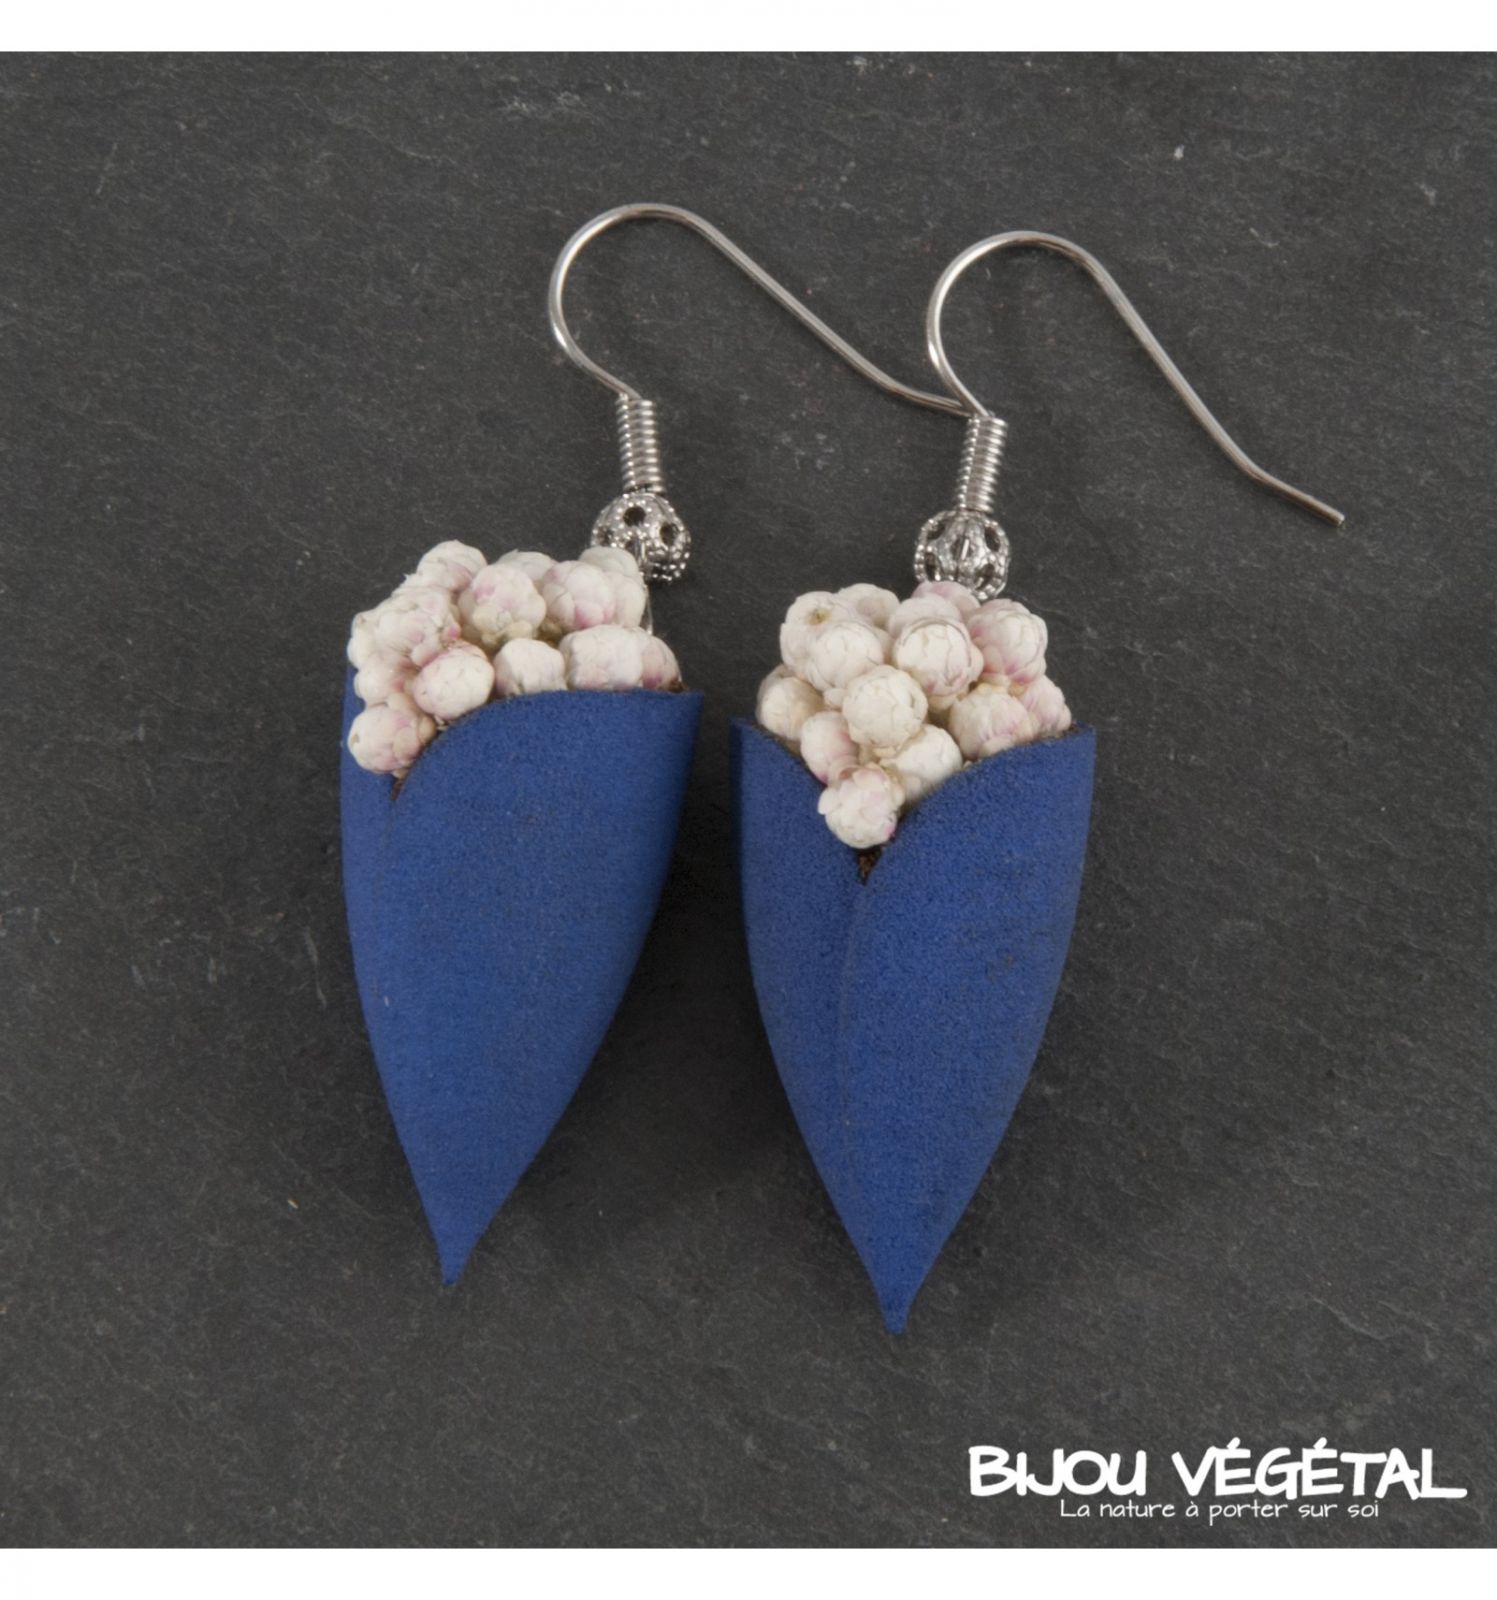 Dřevěné hračky Živé šperky - Náušnice Tulipán modré s trvalými bílými kvšty Radis et Capucine